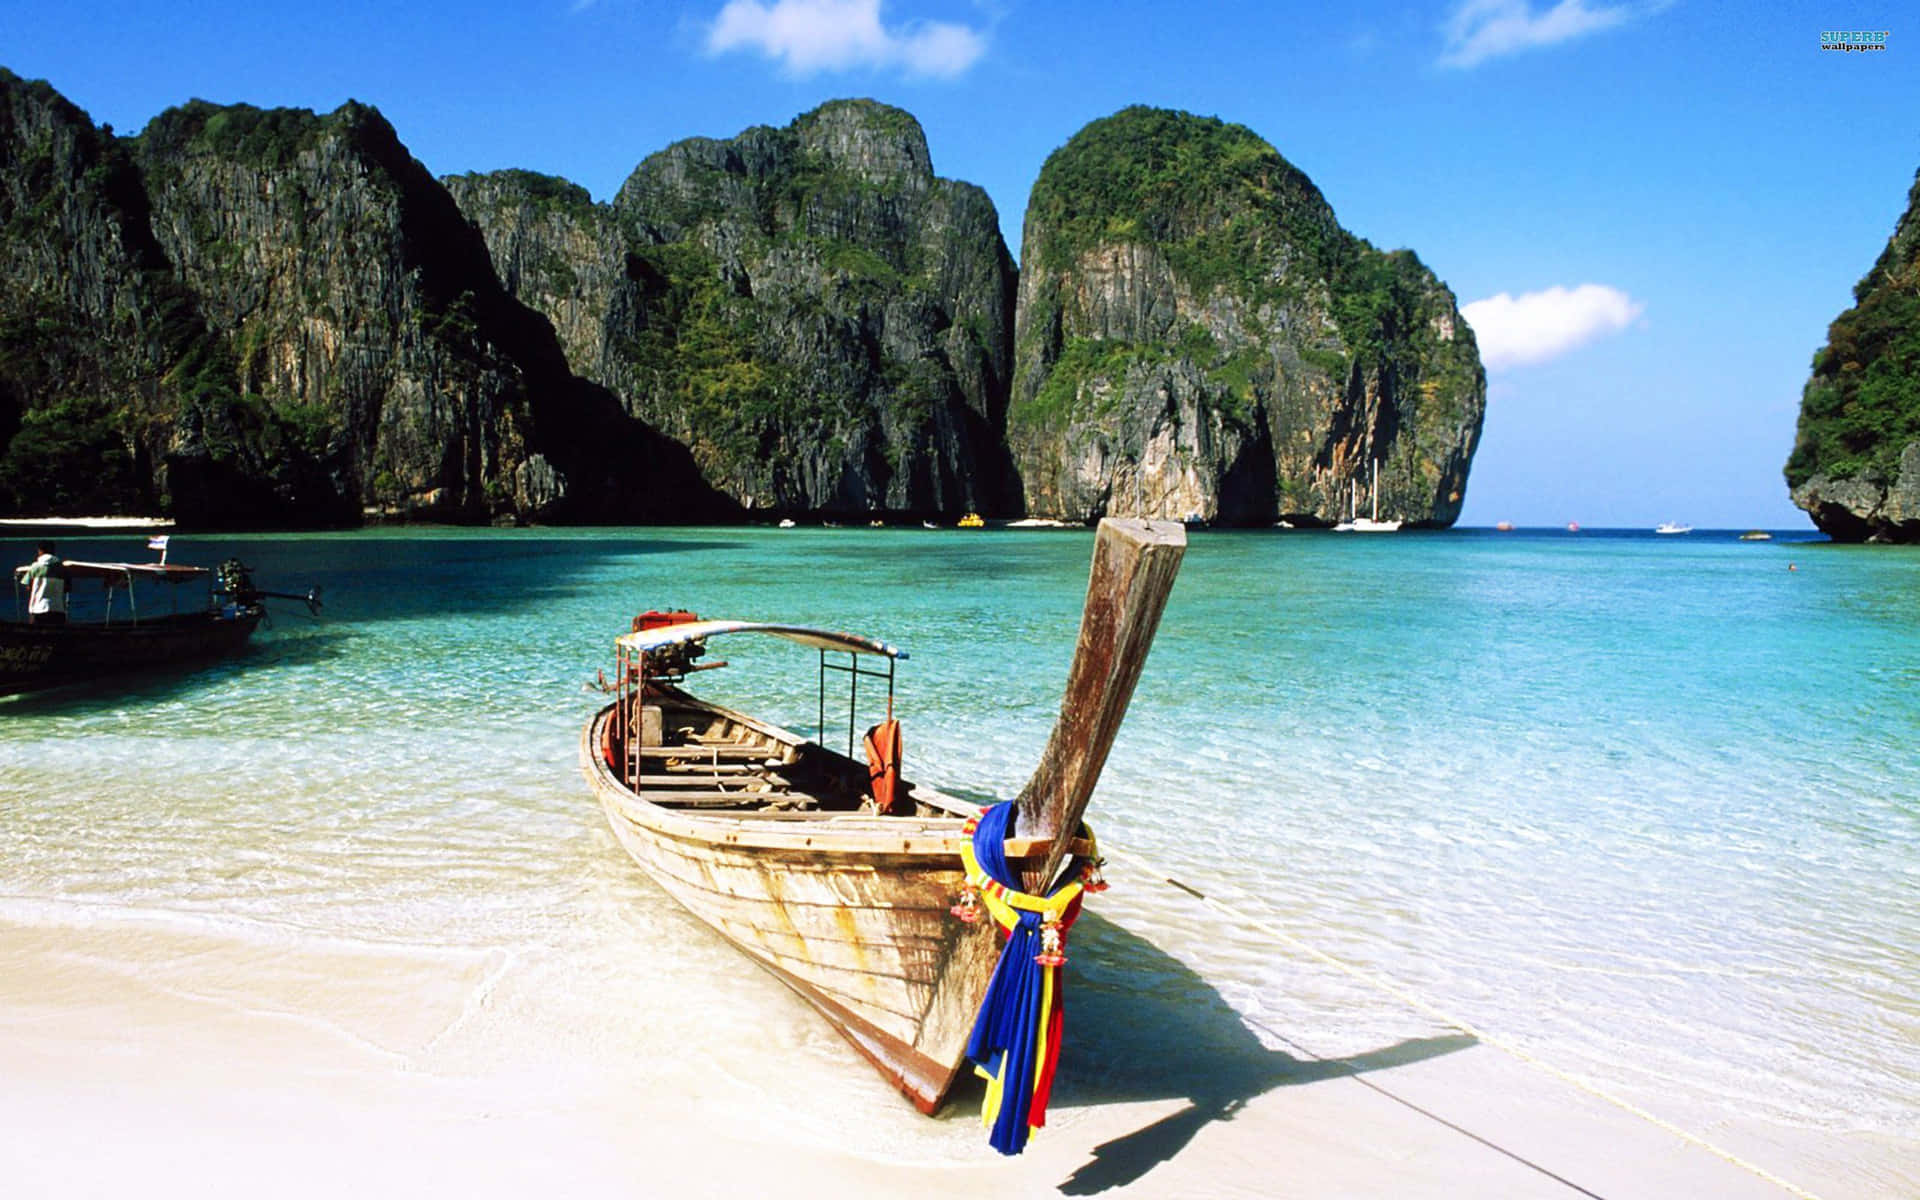 Willkommenin Thailand - Ein Paradies Natürlicher Wunder.